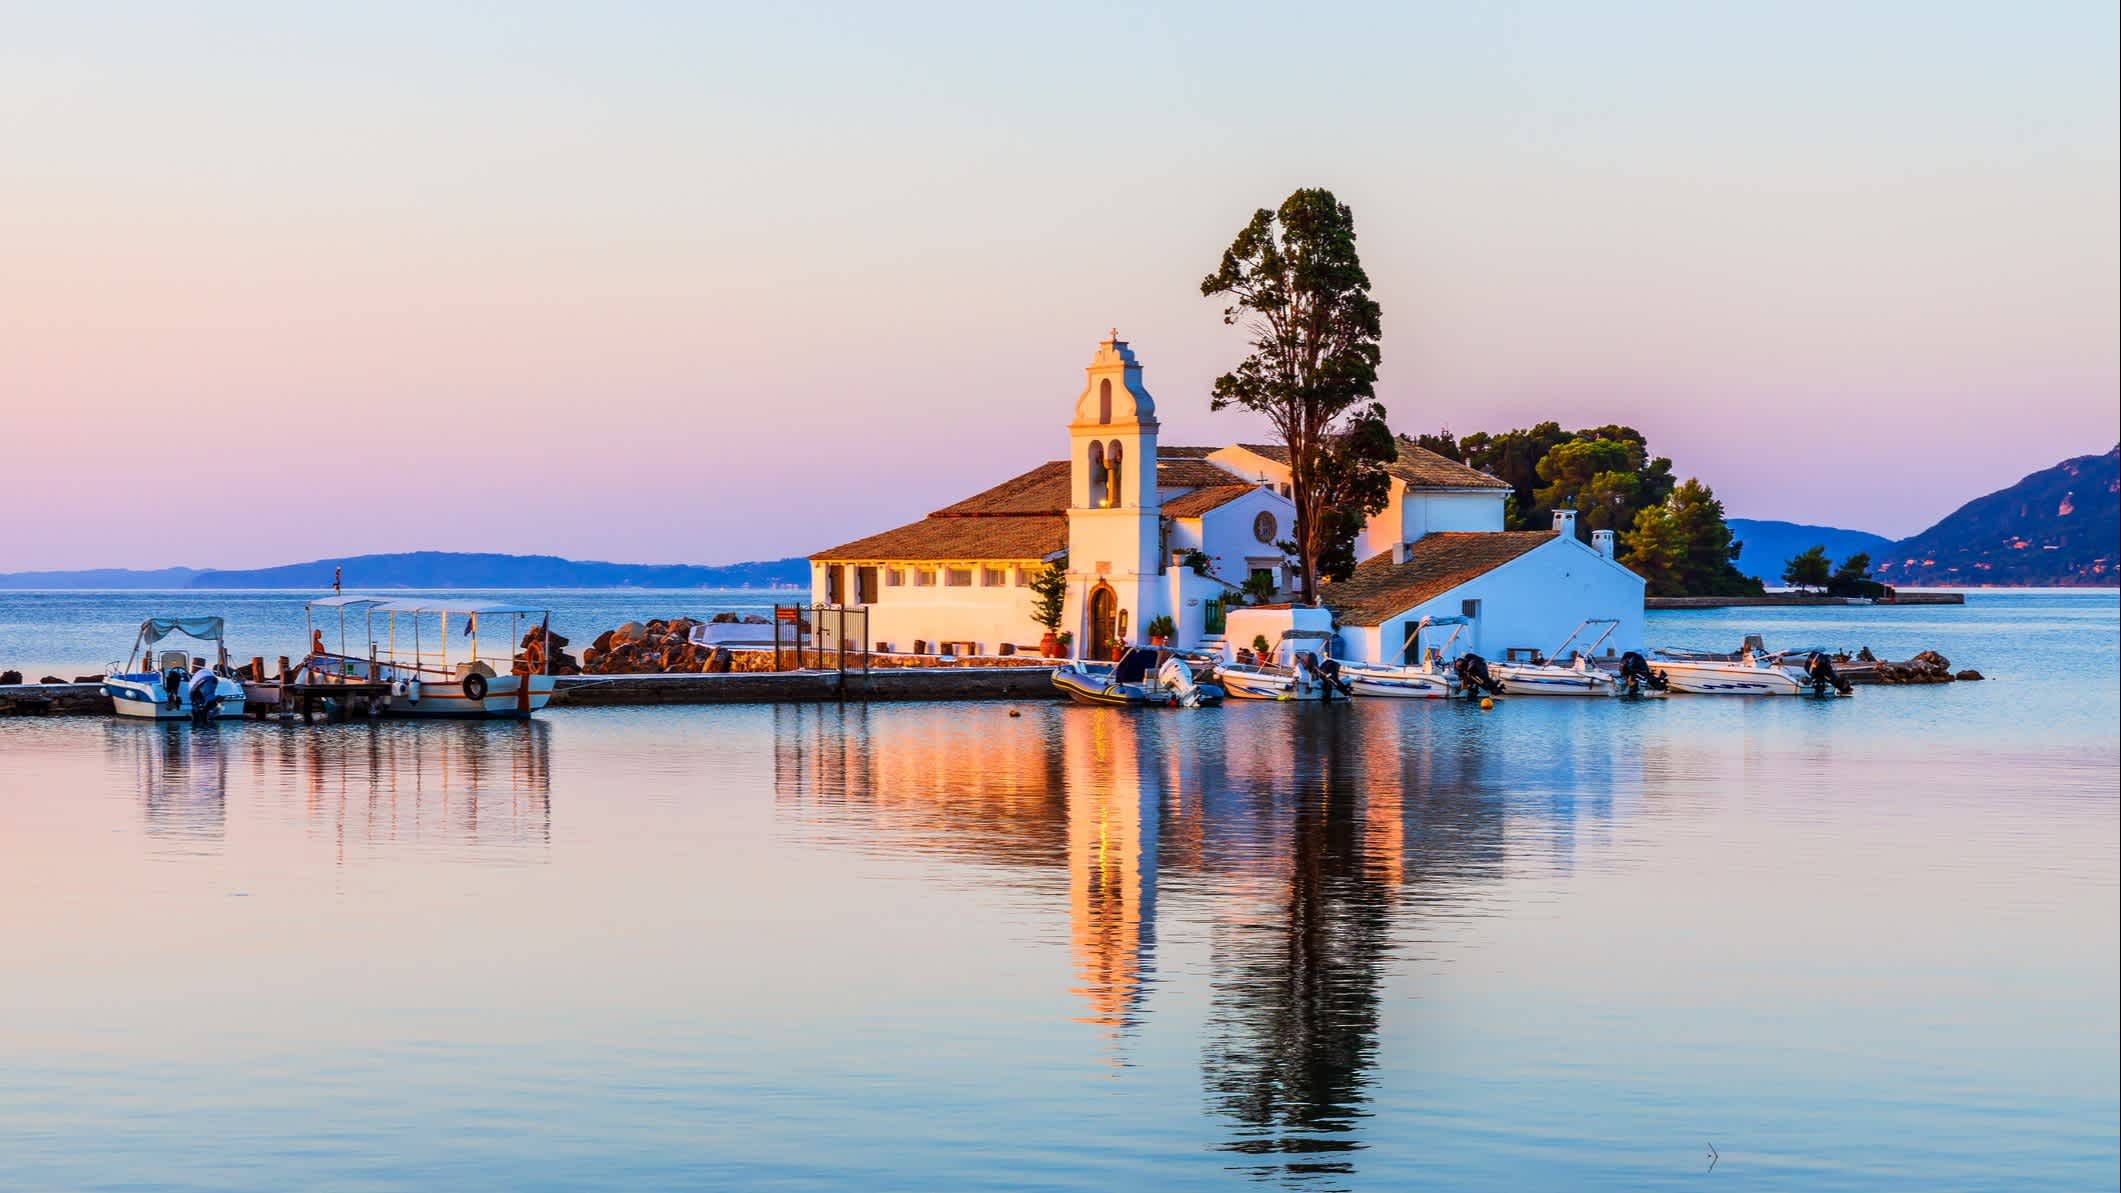 Le pittoresque monastère des Vlachernes entouré par la mer, au lever du soleil, à Corfou en Grèce.